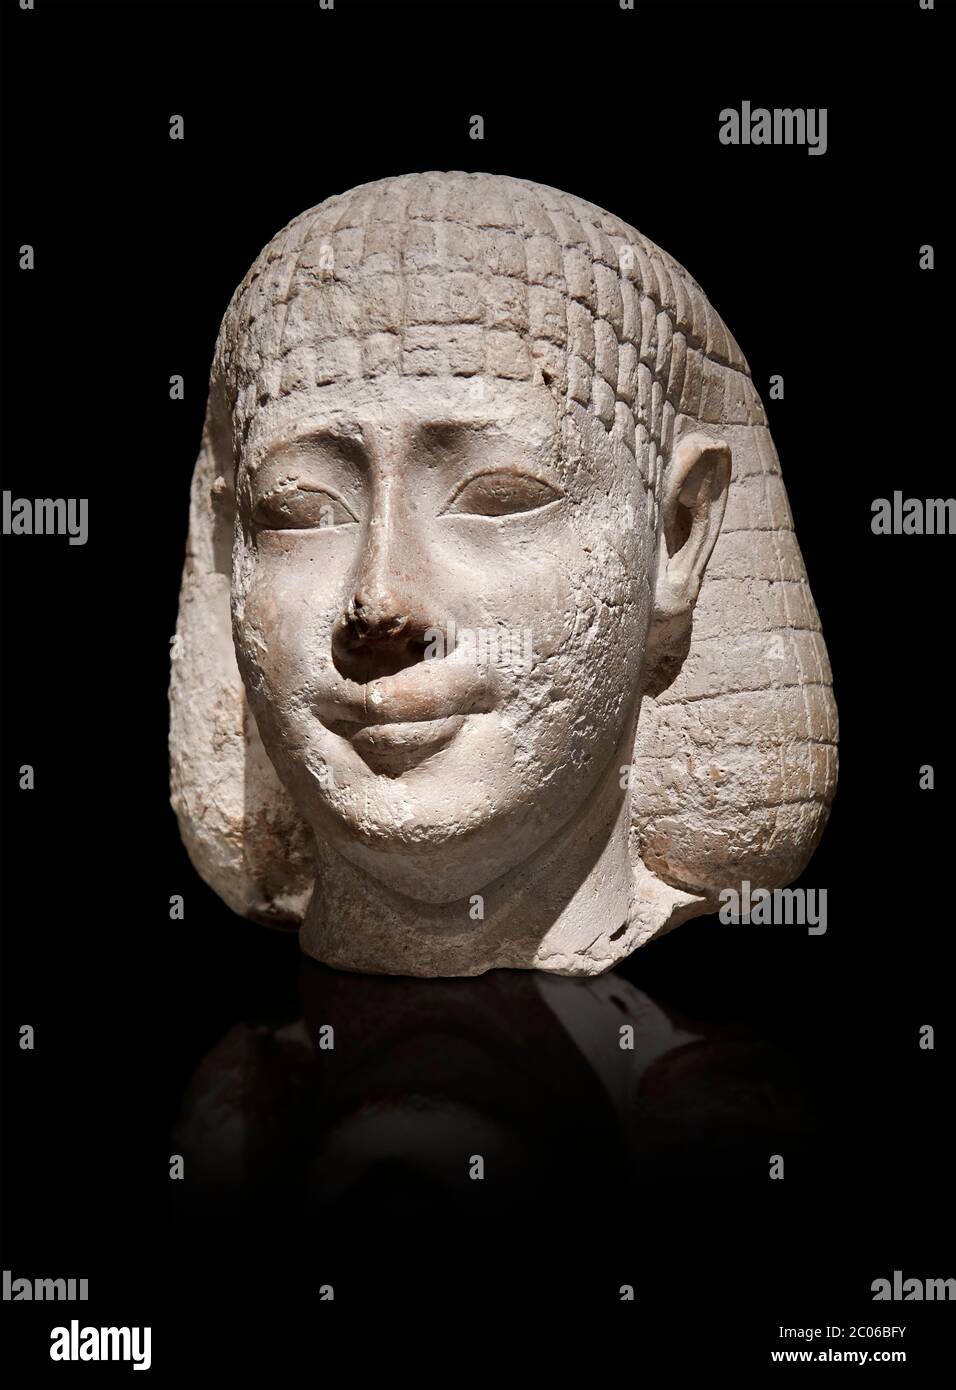 Buste de statue égyptienne antique d'un homme, graywacke, période tardive, (722-322 av. J.-C.), . Musée égyptien, Turin. Fond gris. Ancien fonds. Cat. 3078. Banque D'Images